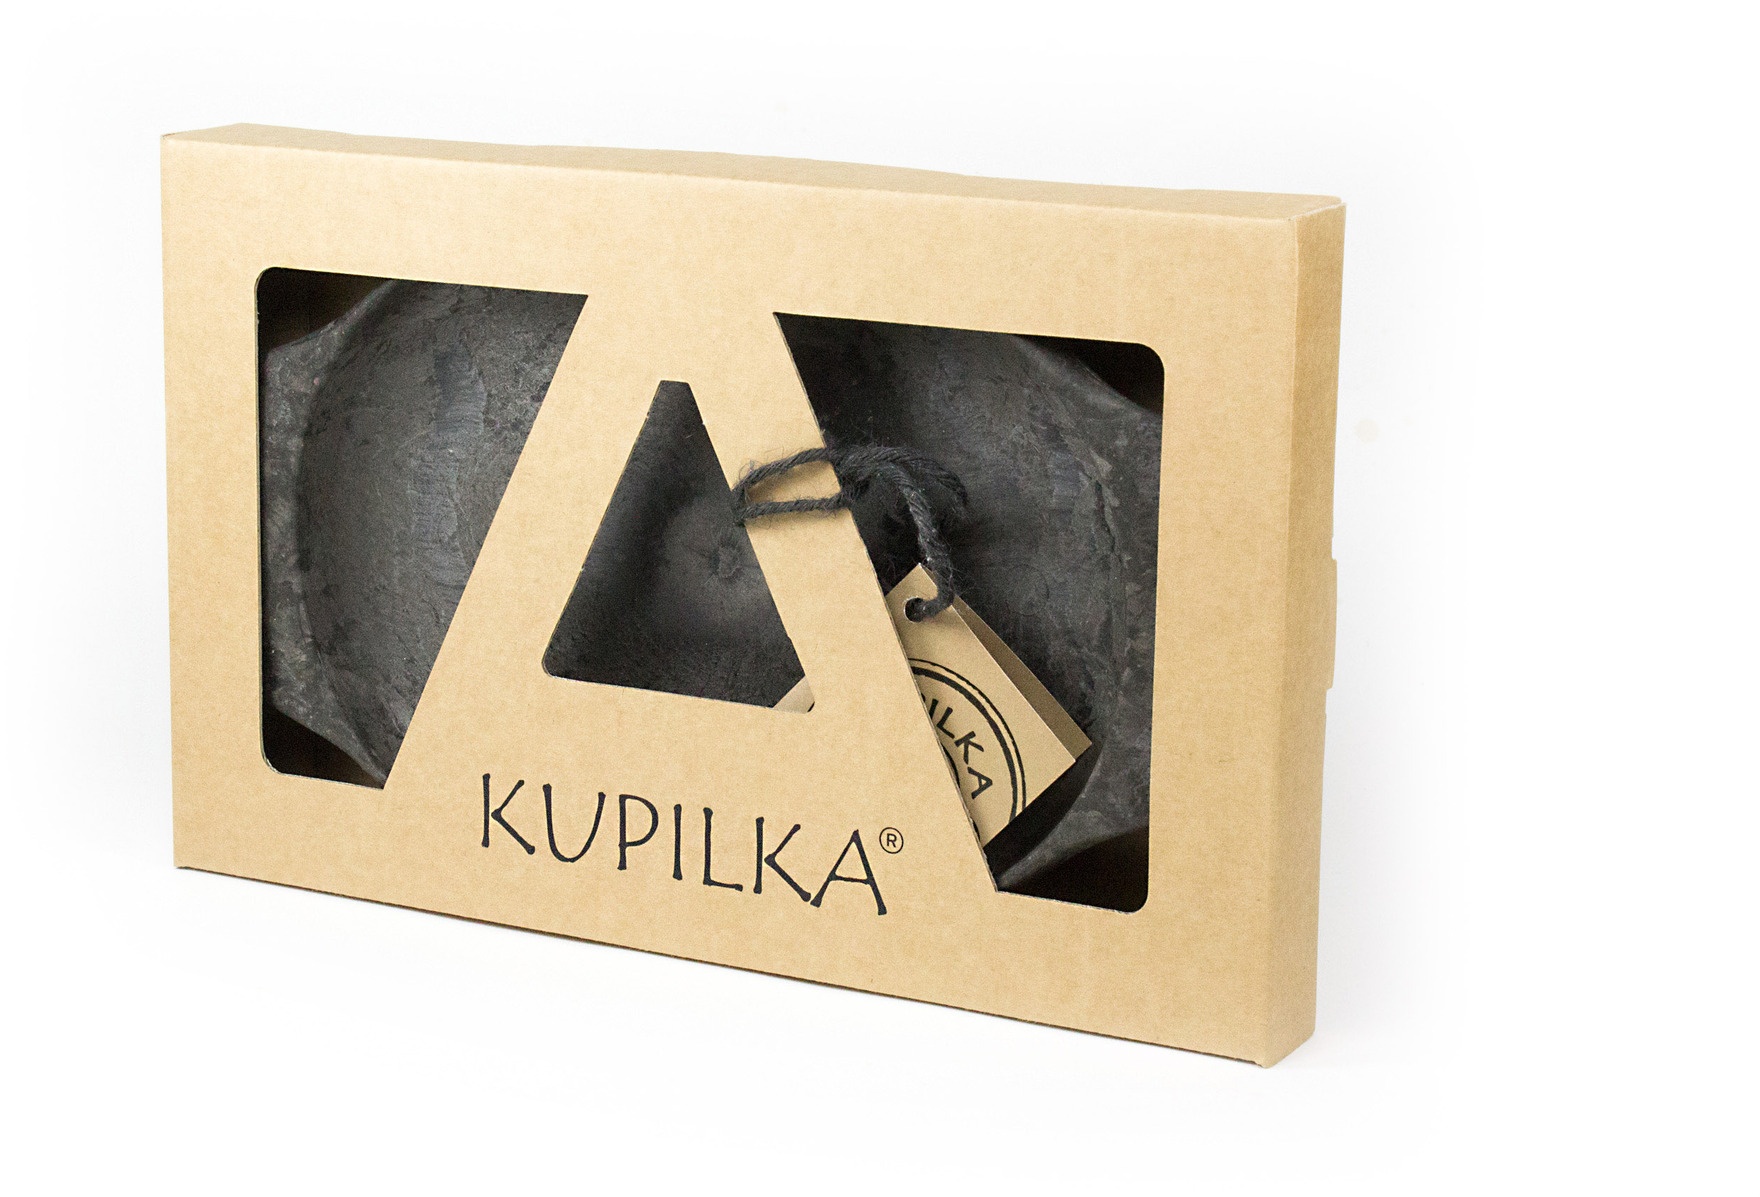 Kupilka K44K Kupilka 44 Platte Schwarz Box